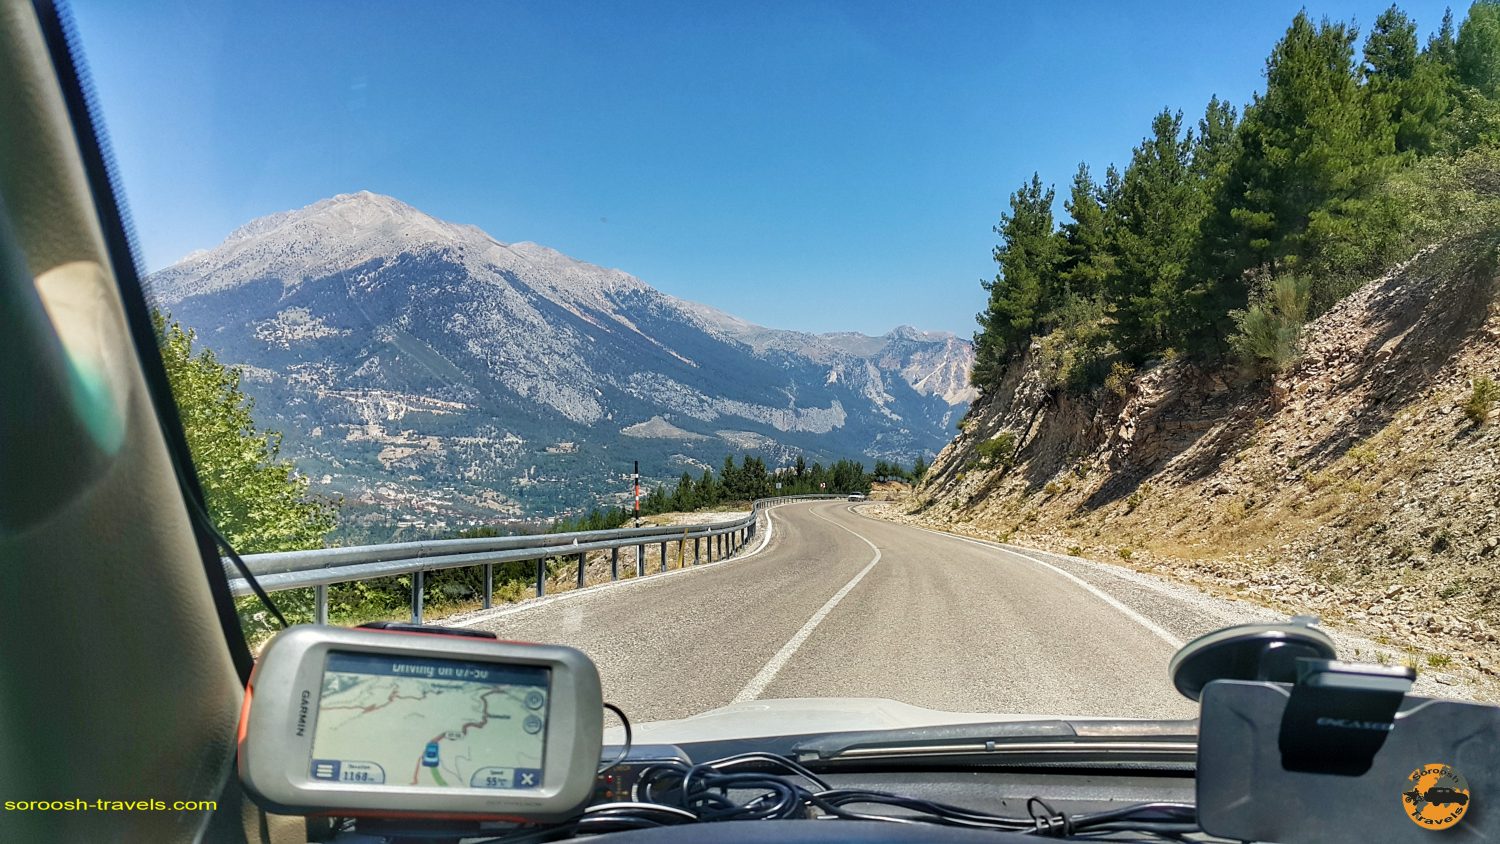 جاده کوهستانی کِمِر به انتالیا در ترکیه - تابستان 1398 2019